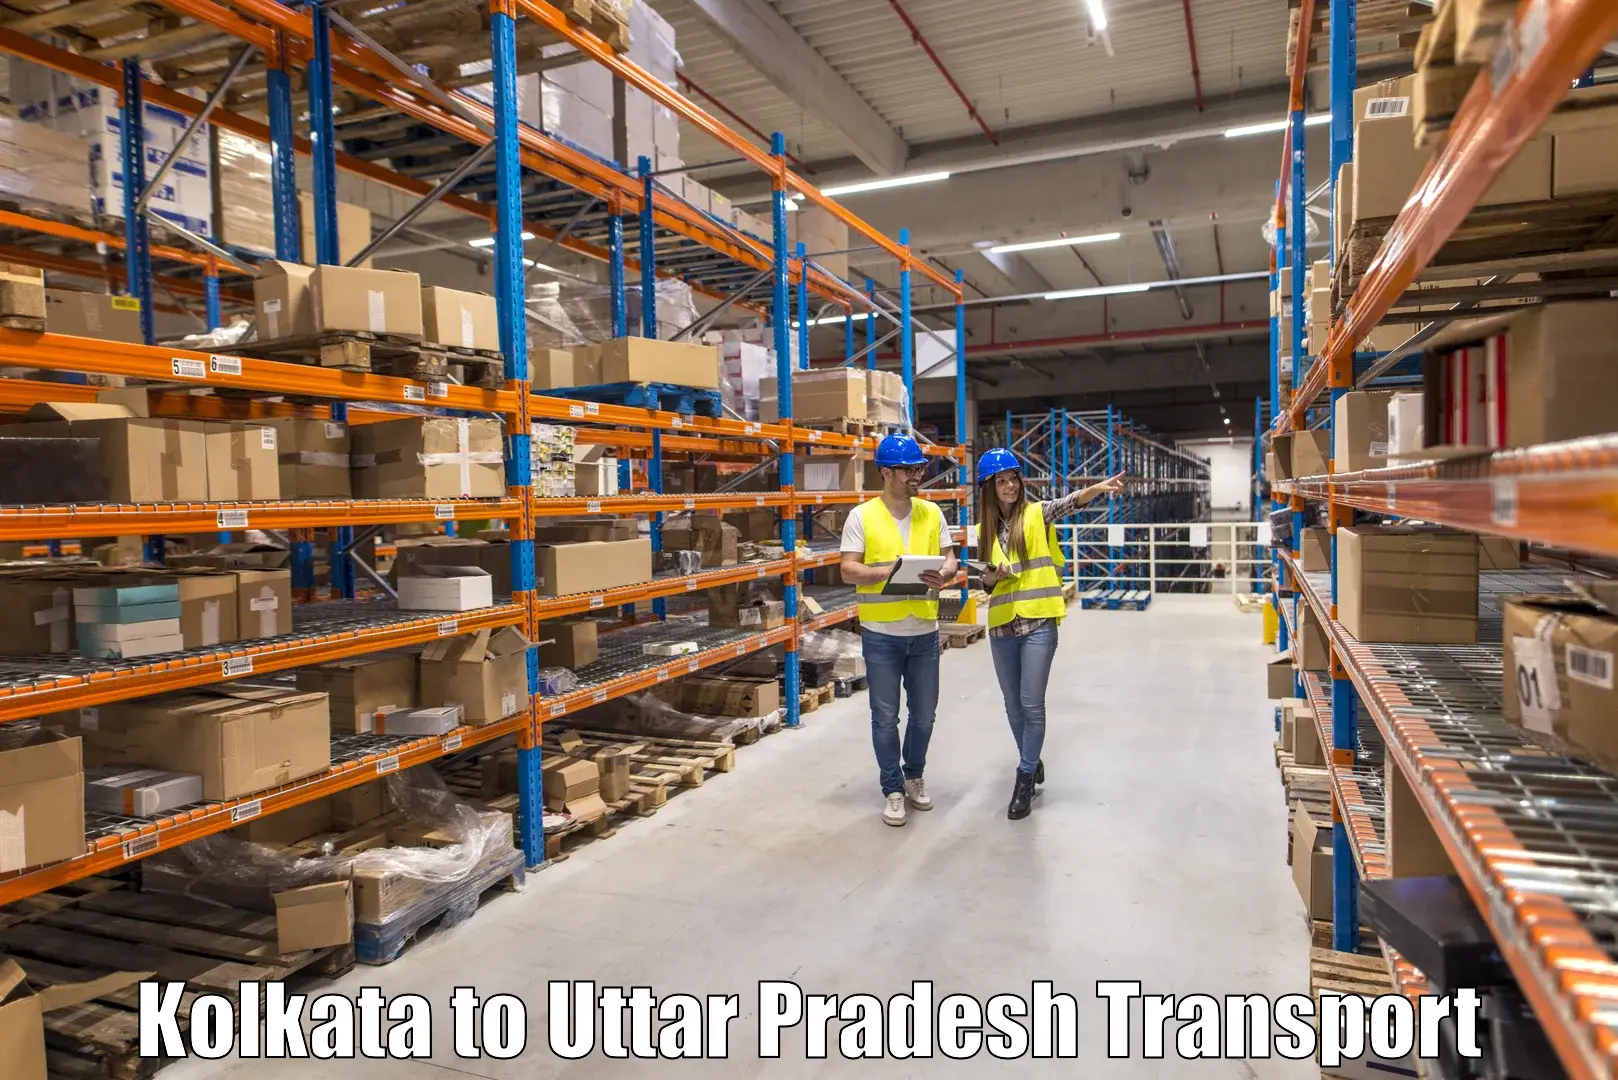 Shipping partner Kolkata to Mohanlalganj